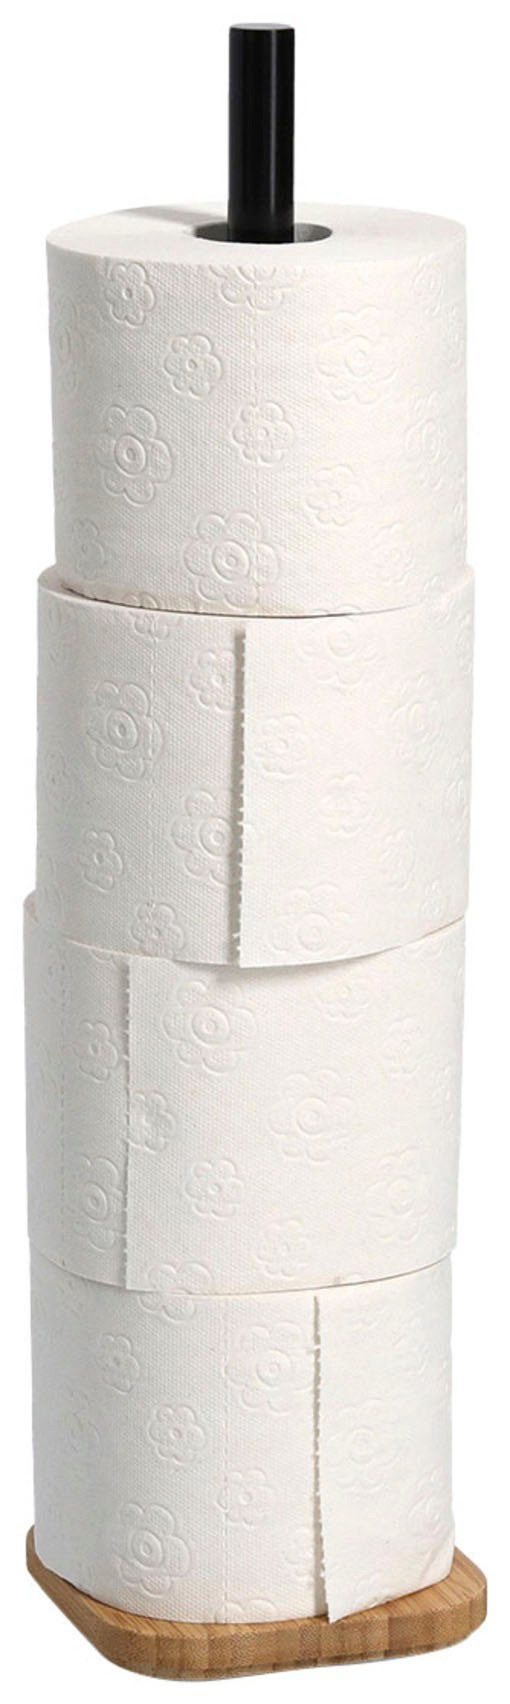 Bambus Zeller WC-Rollenhalter, Toiletten-Ersatzrollenhalter, Present